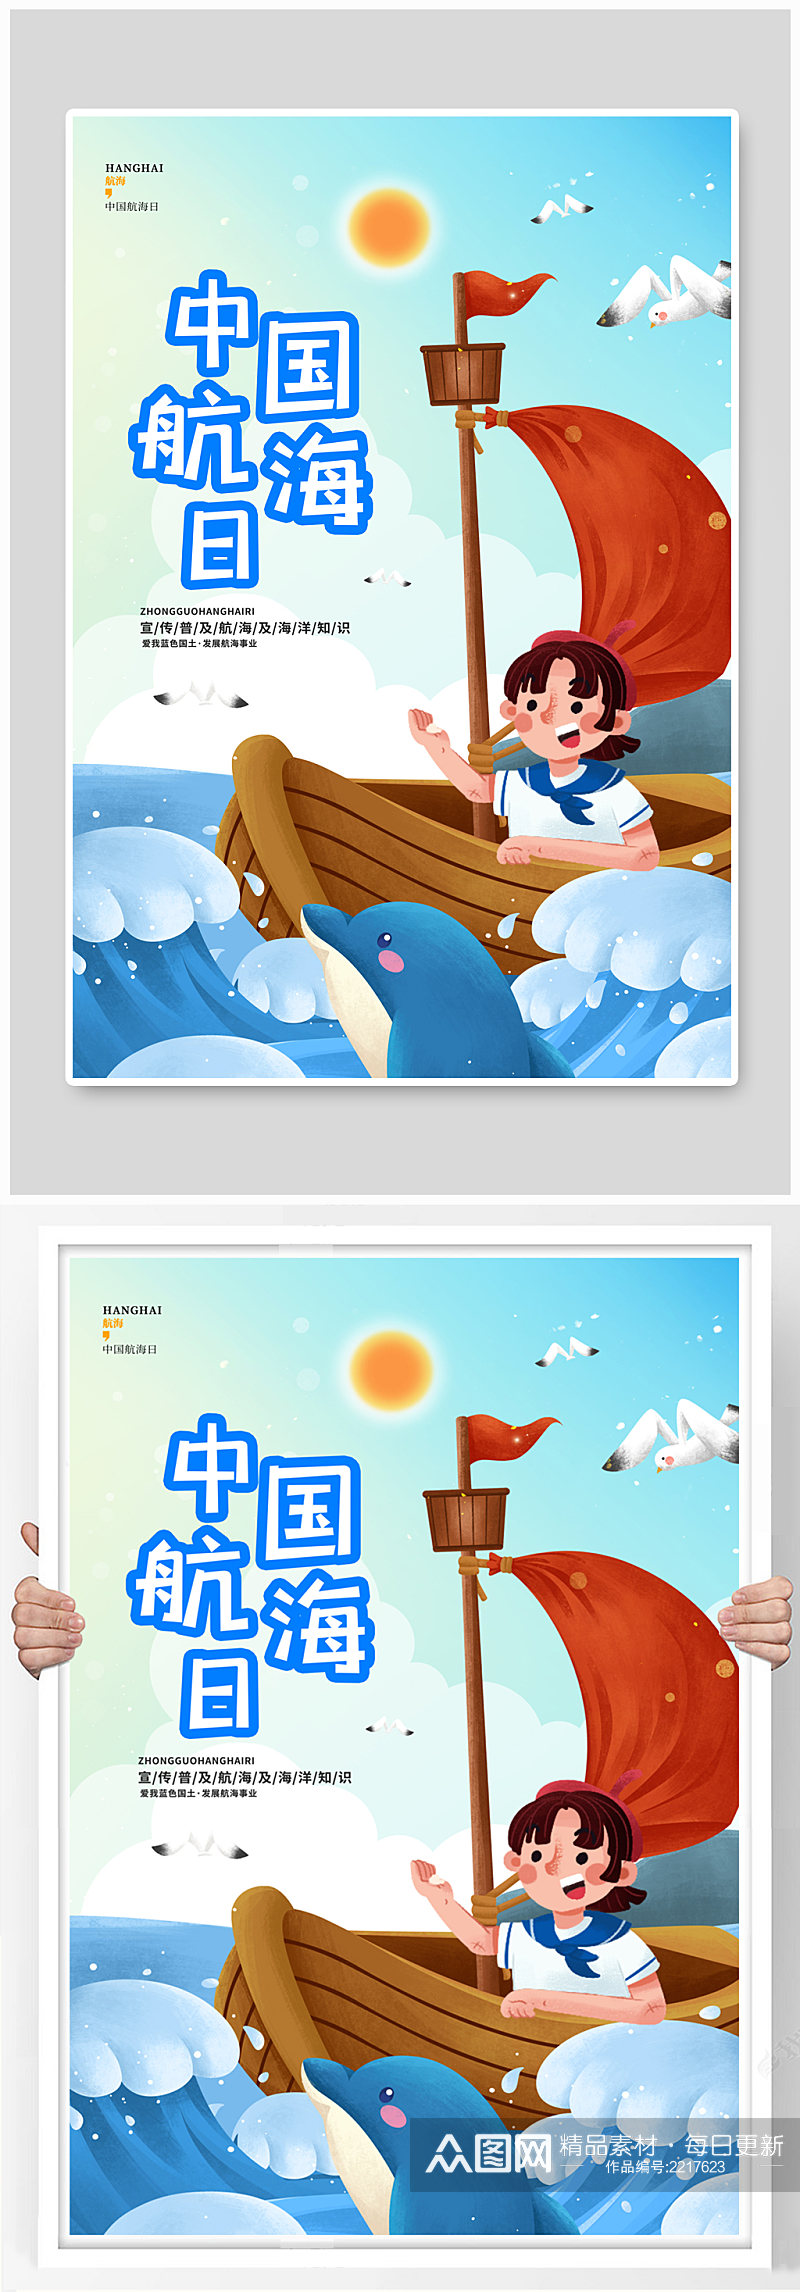 蓝色卡通简约中国航海日节日宣传海报素材